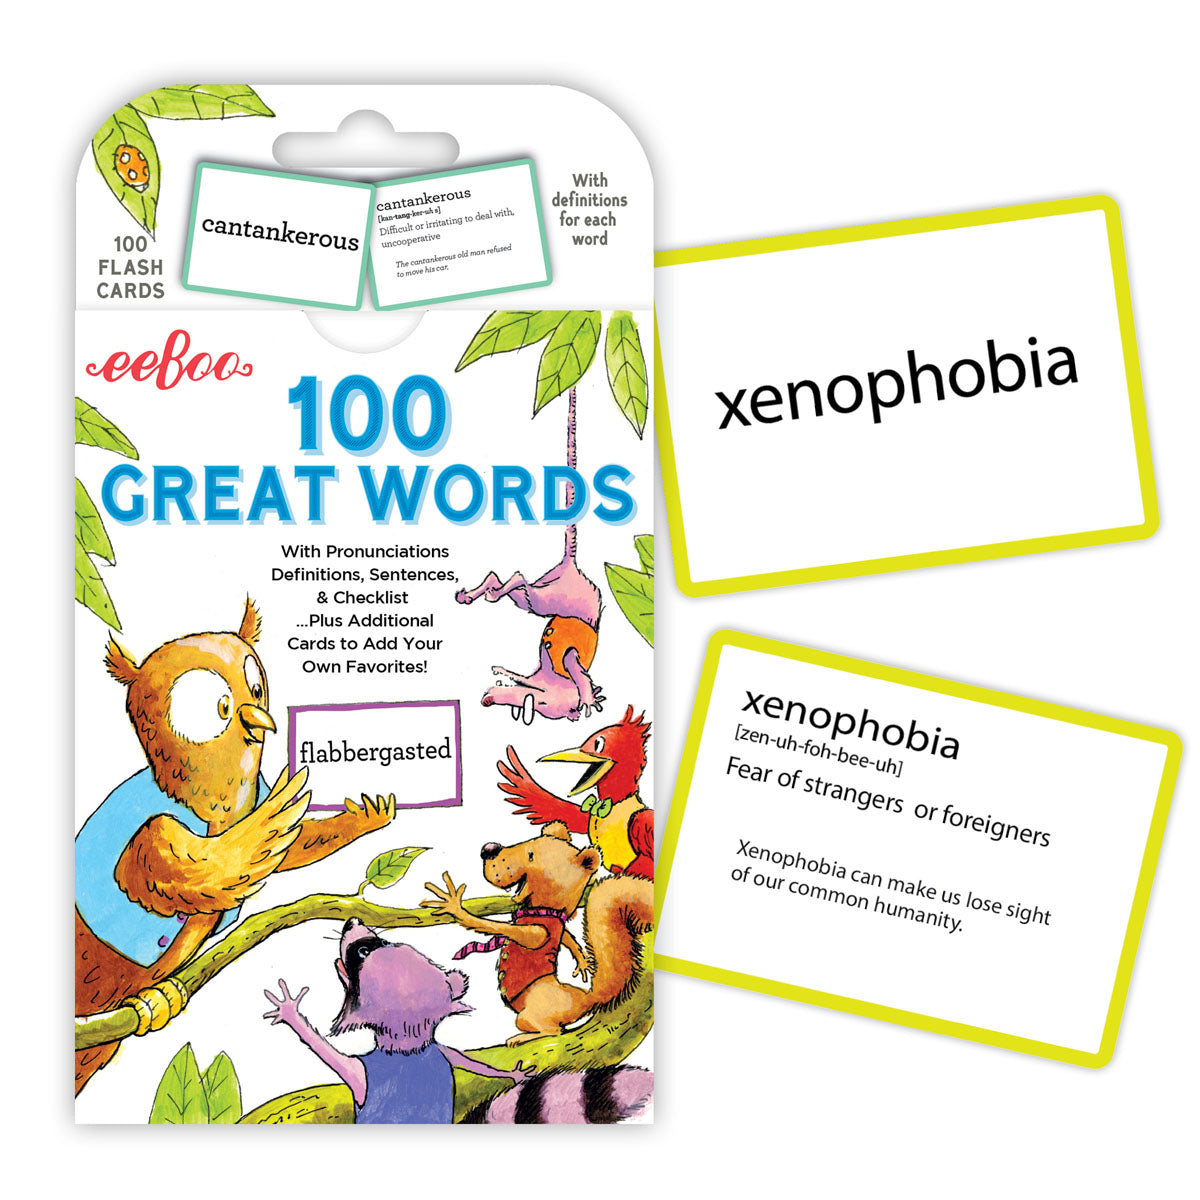 eeBoo Flash Cards - 100 Great Words